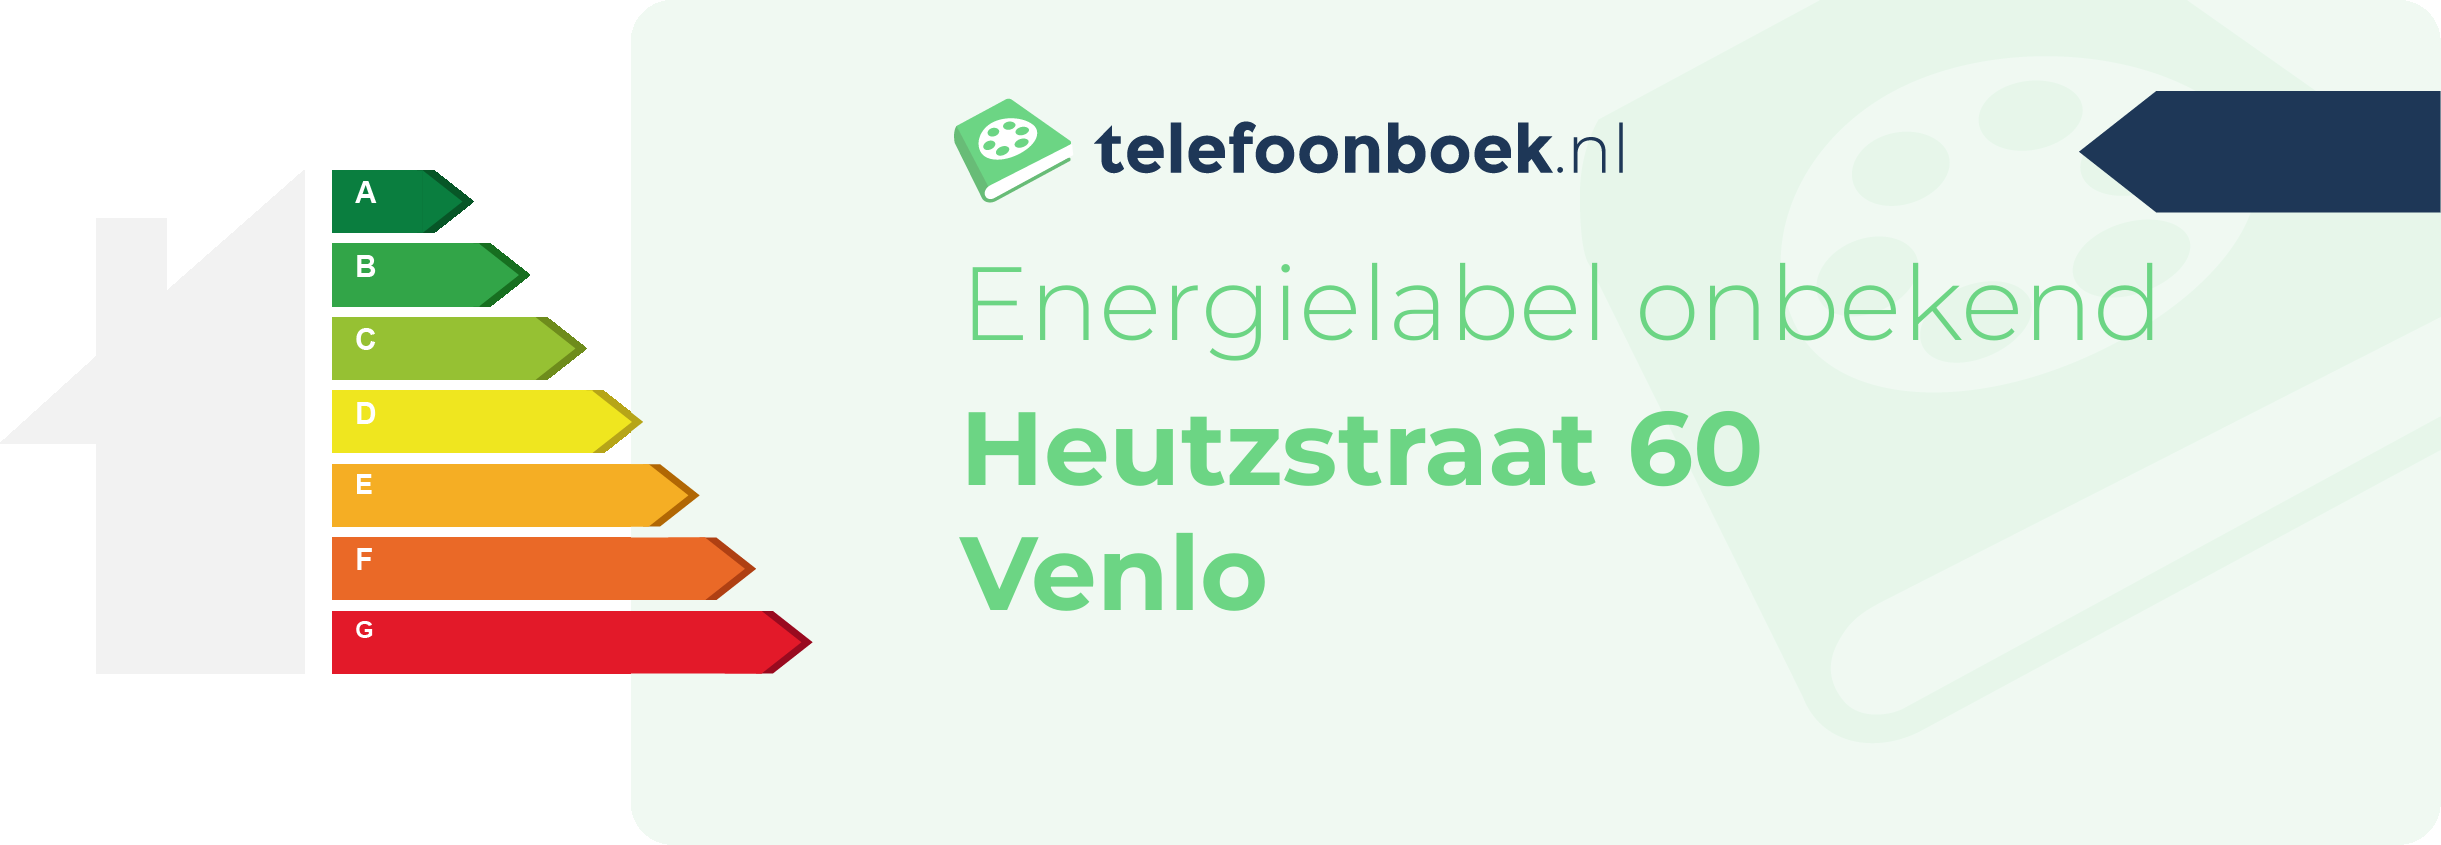 Energielabel Heutzstraat 60 Venlo